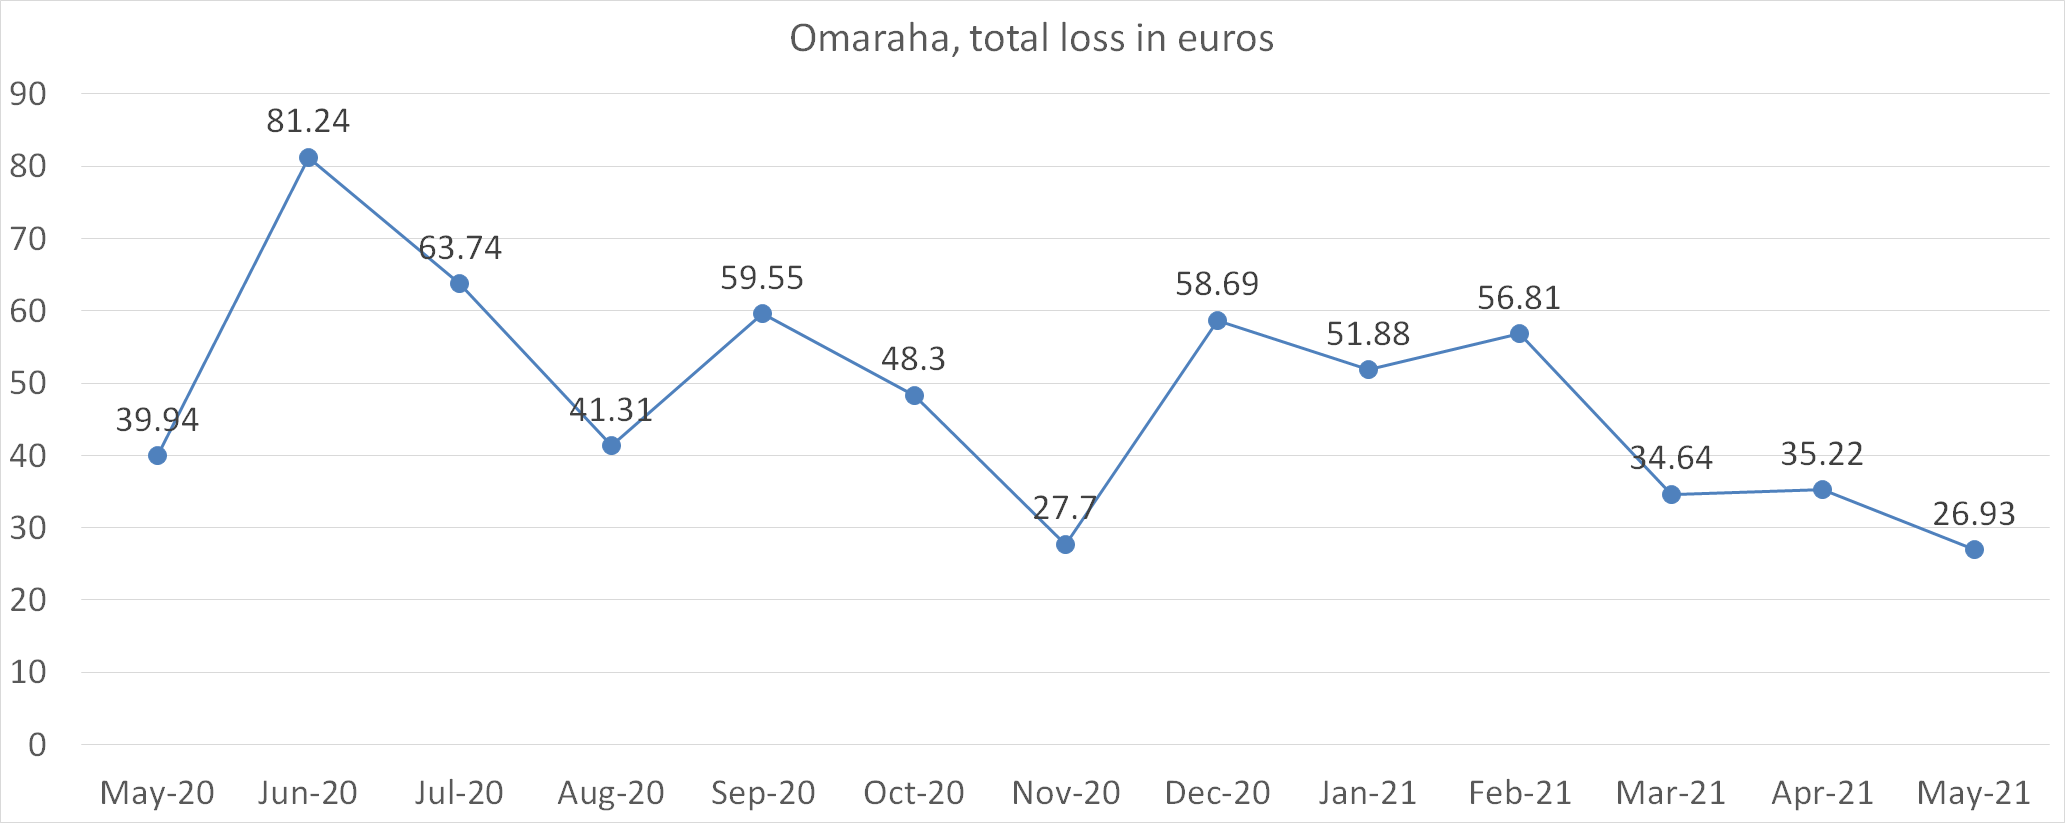 omaraha total loss in euros may 2021